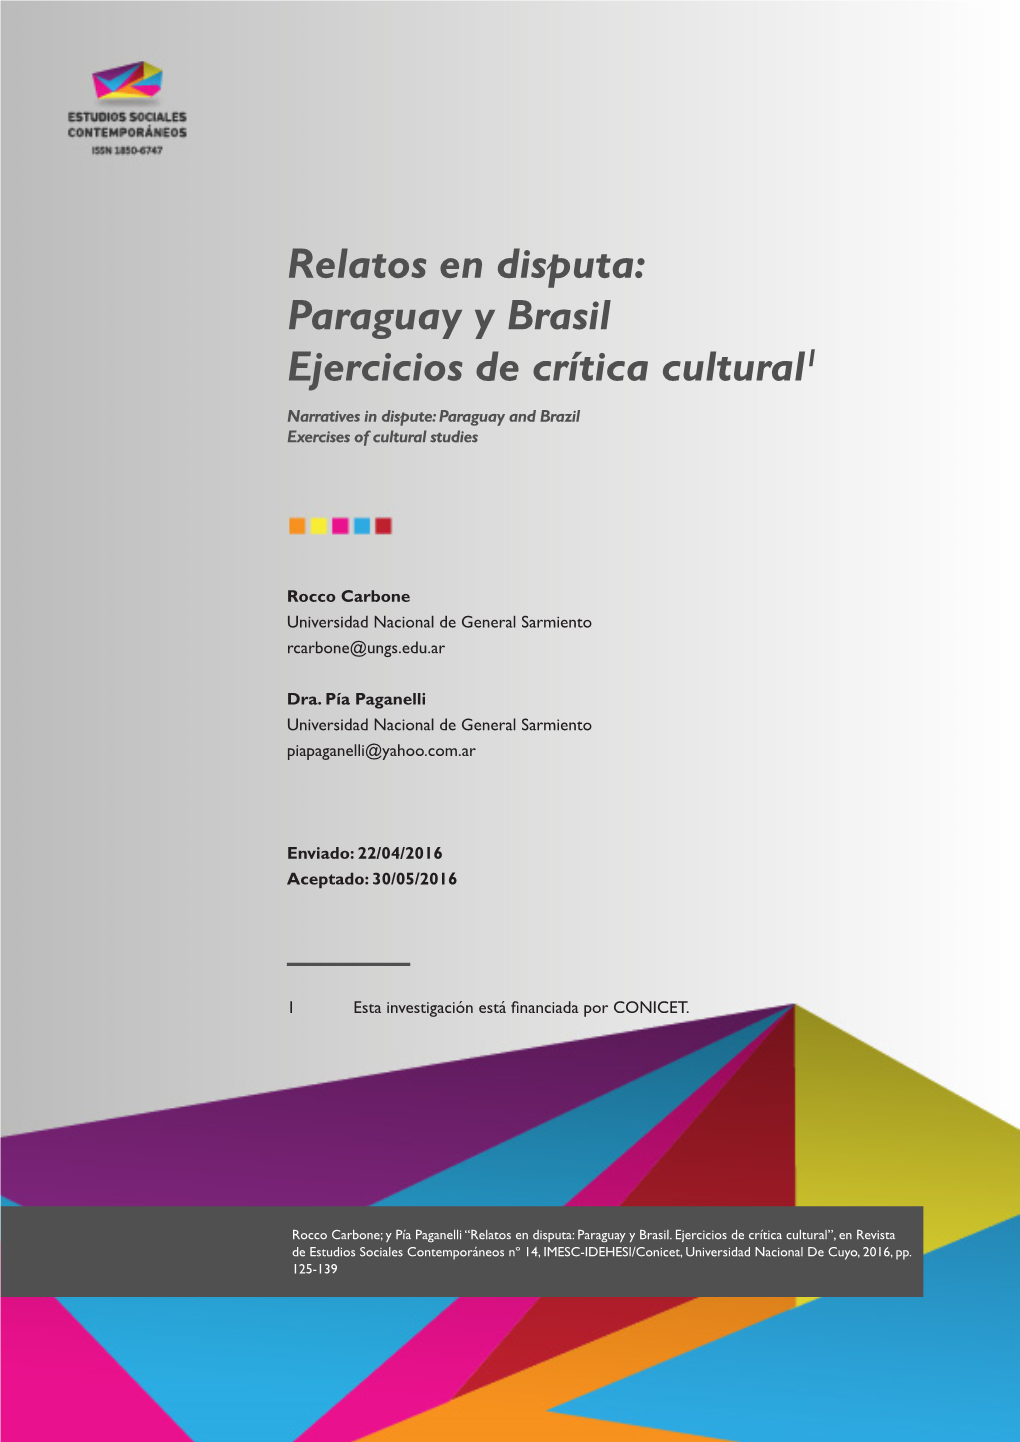 Relatos En Disputa: Paraguay Y Brasil Ejercicios De Crítica Cultural1 Narratives in Dispute: Paraguay and Brazil Exercises of Cultural Studies